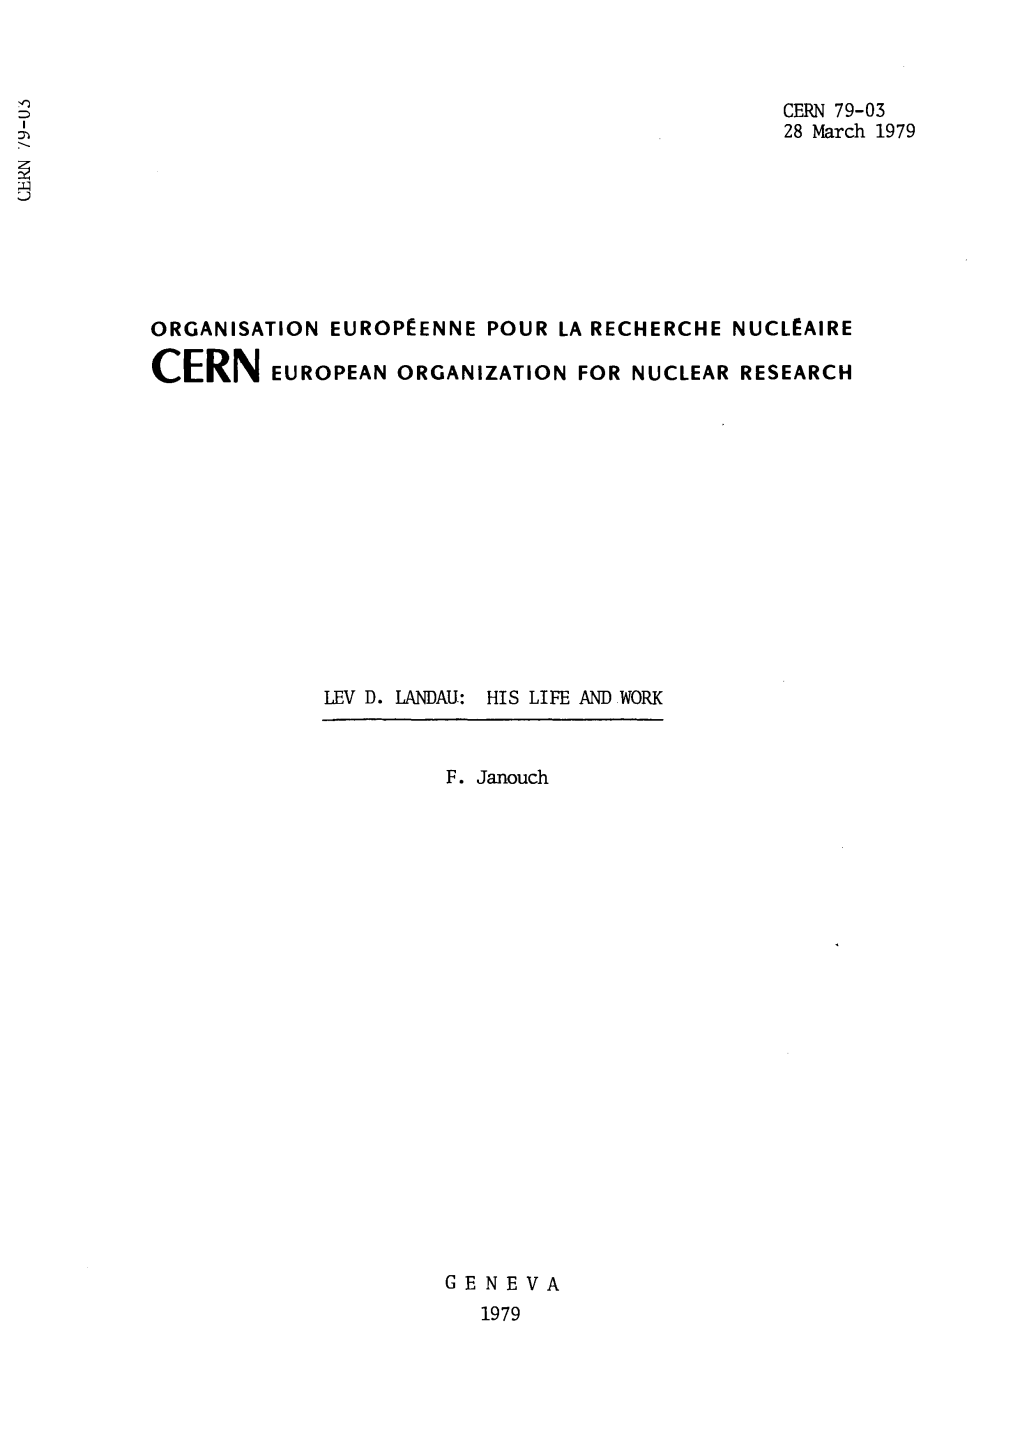 CERN 79-03 28 March 1979 ORGANISATION EUROPÉENNE